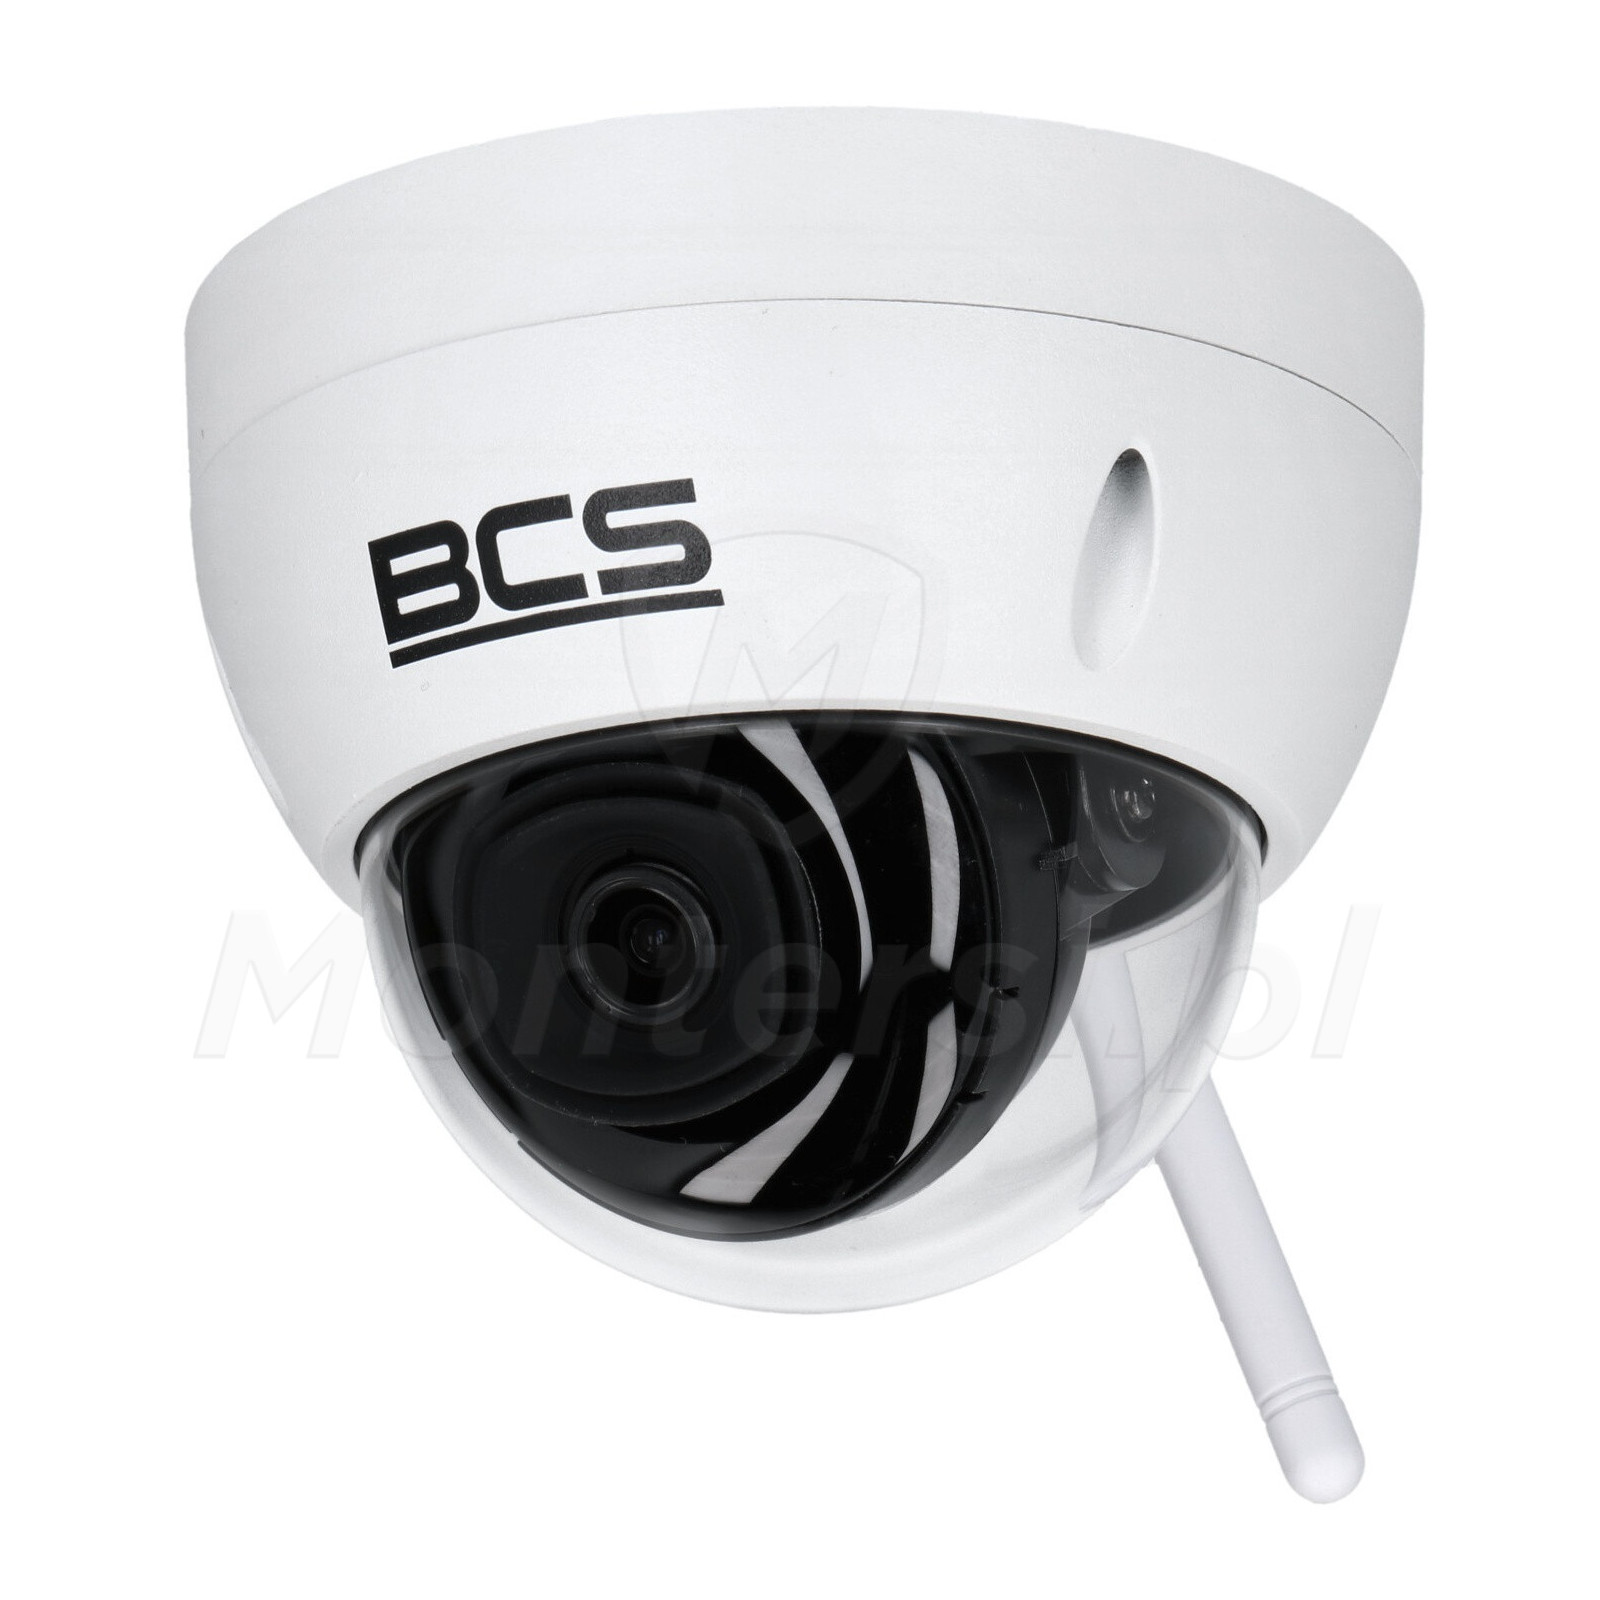 BCS-L-DIP14FSR3-W - Kopułkowa kamera IP 2 Mpx